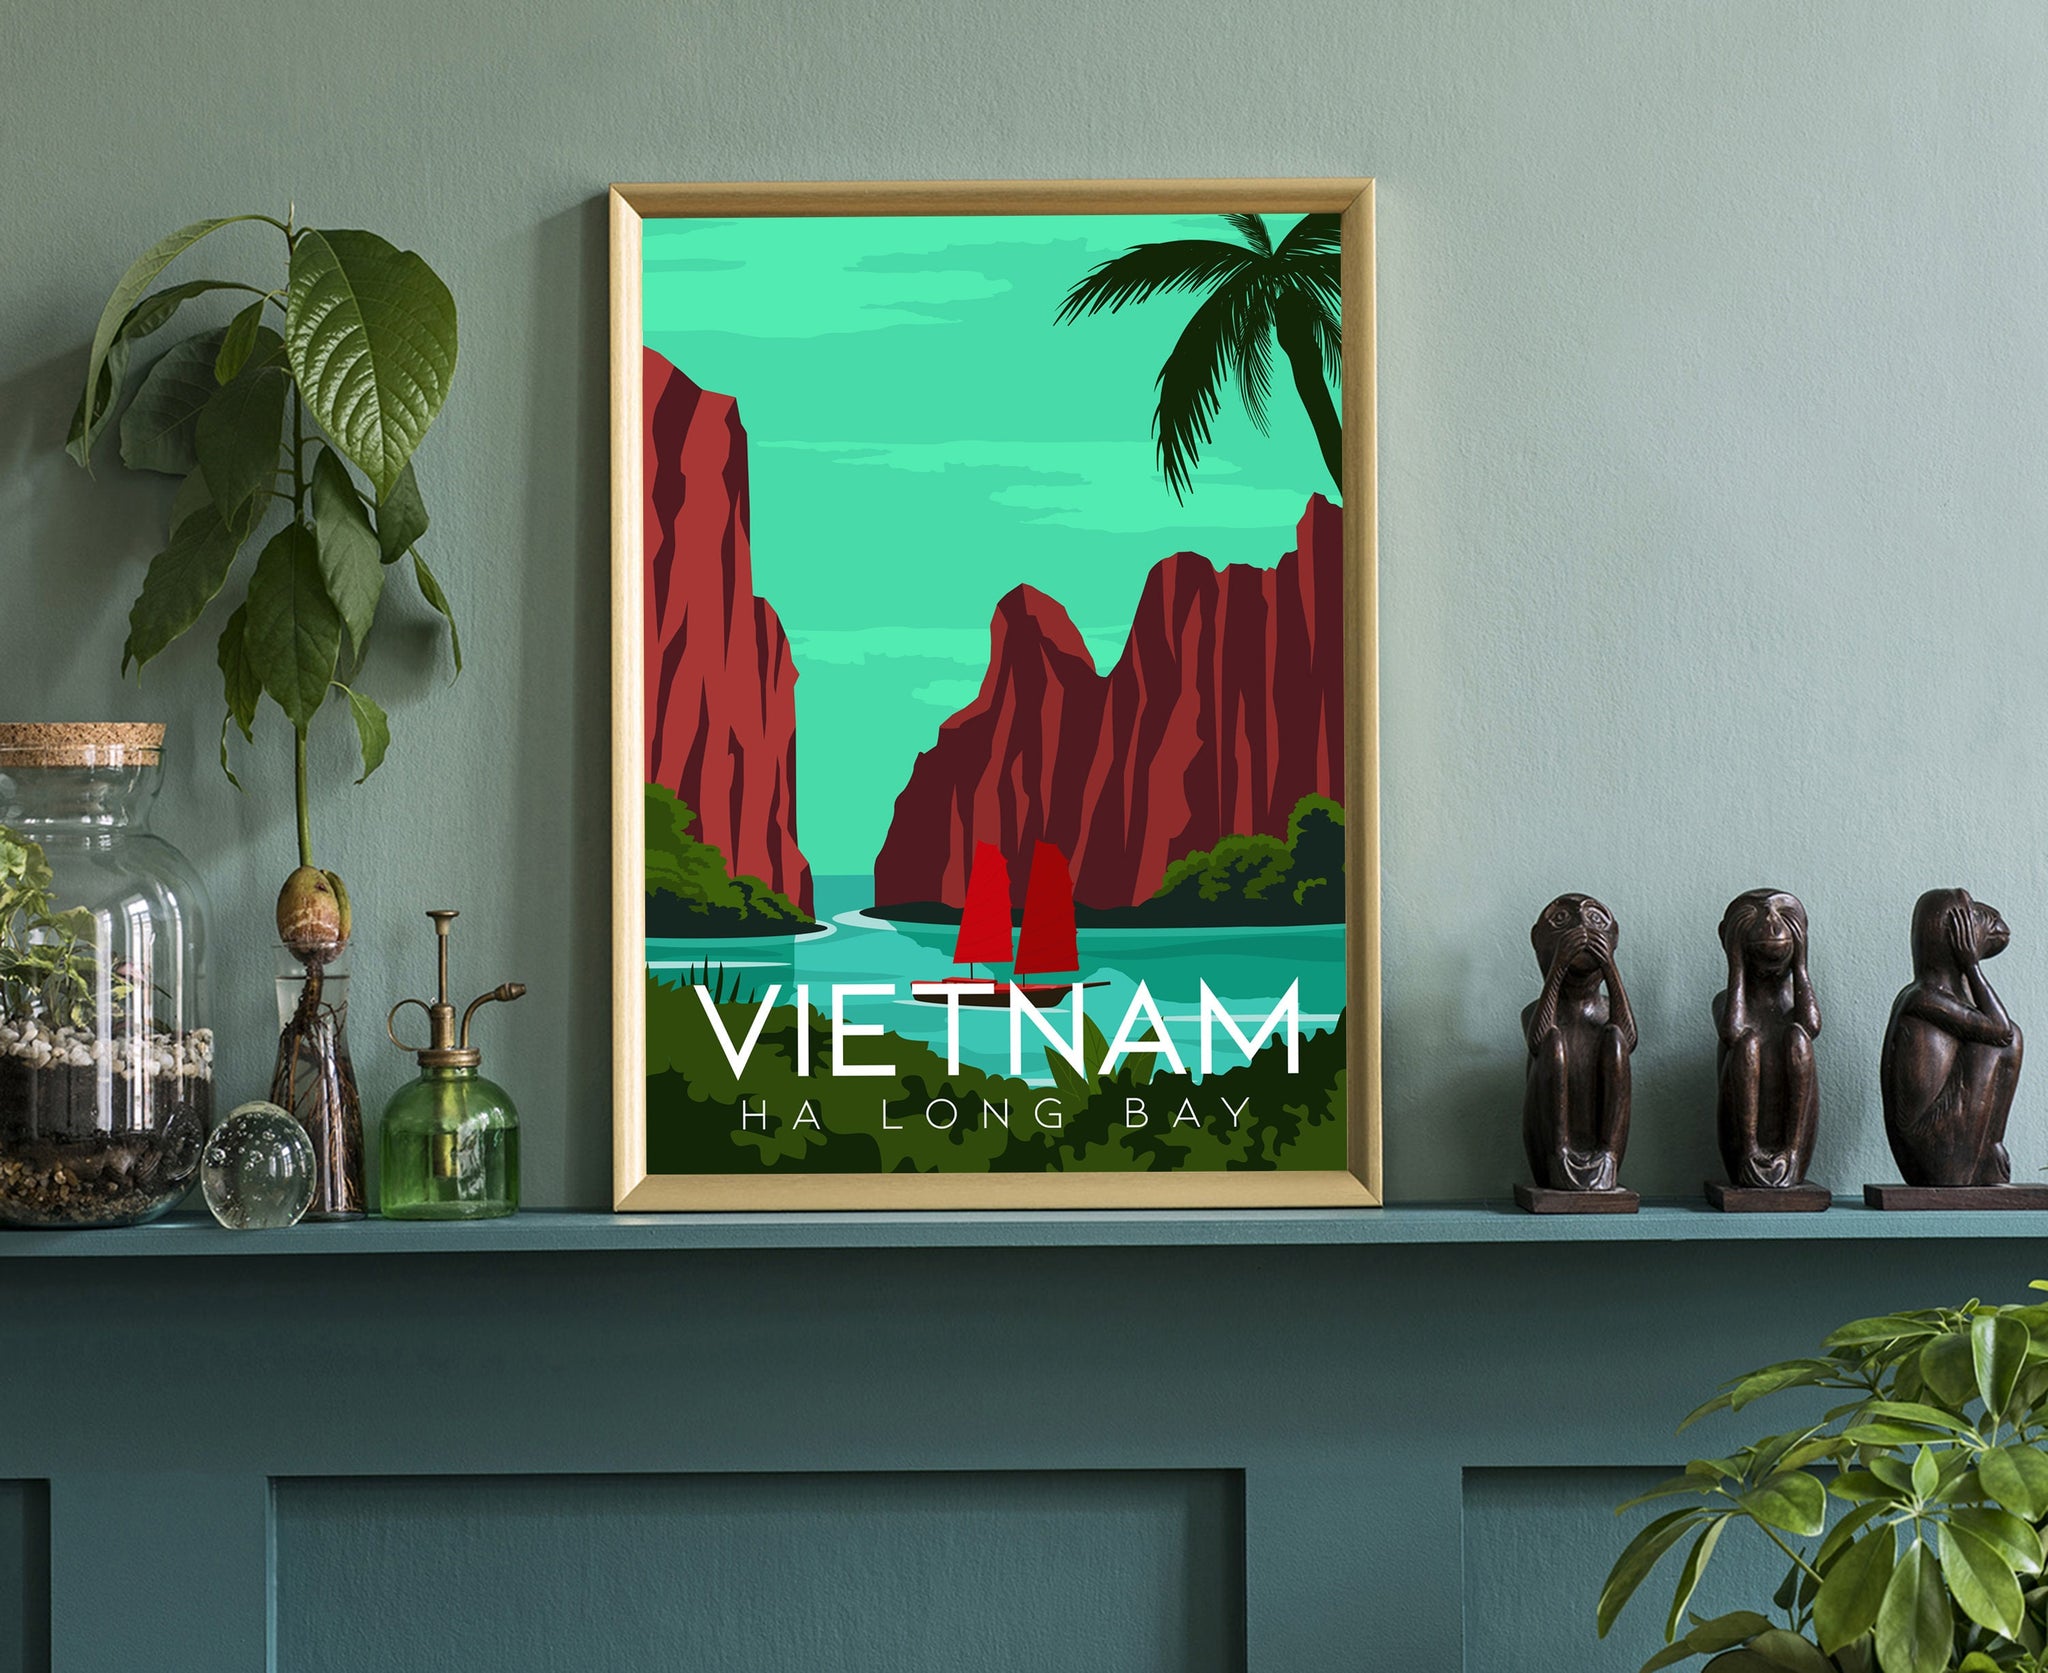 VIETNAM travel poster, Vietnam cityscape poster print, Vietnam landmark poster wall artwork, Home wall art, Office wall decorations